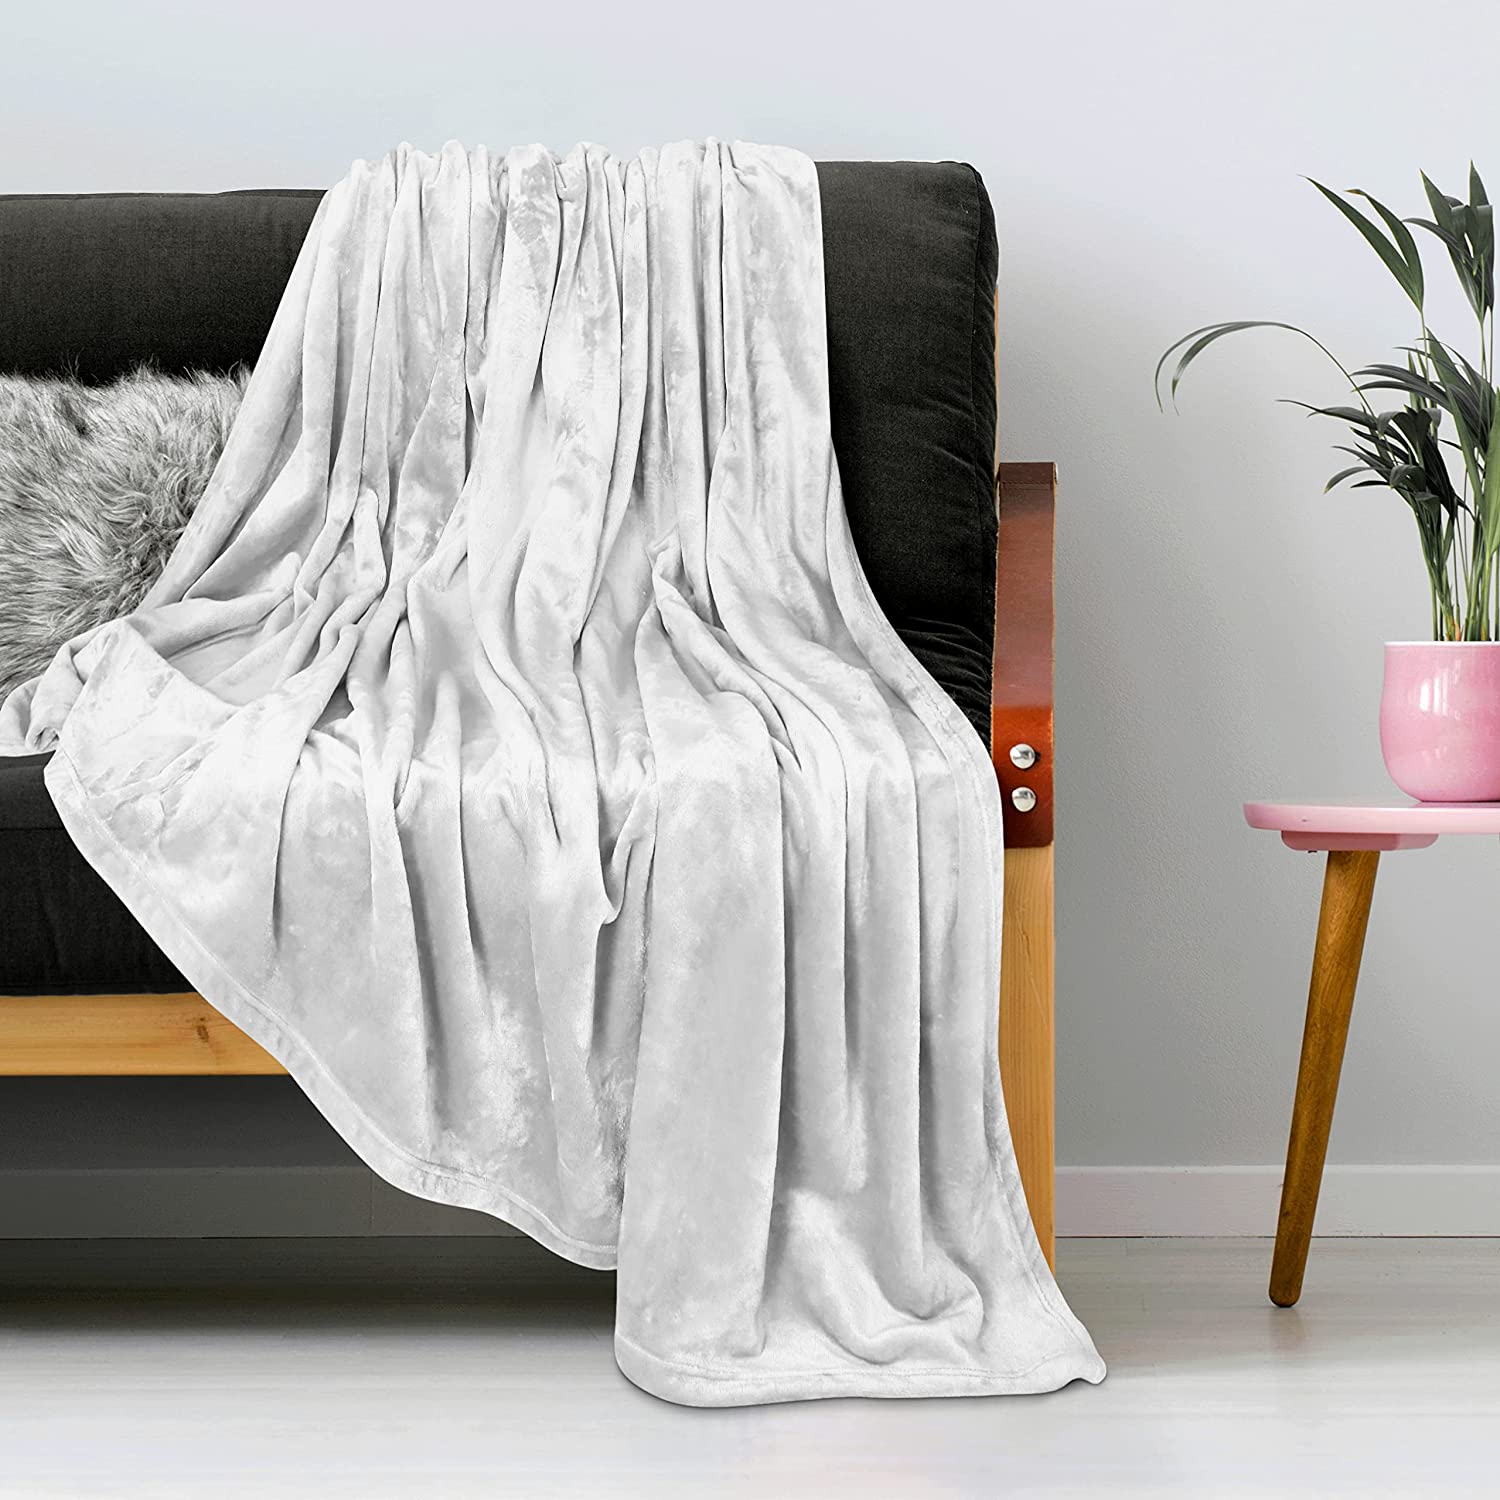 Utopia Bedding Fleece Blanket King Size Grey 300GSM Luxury Bed